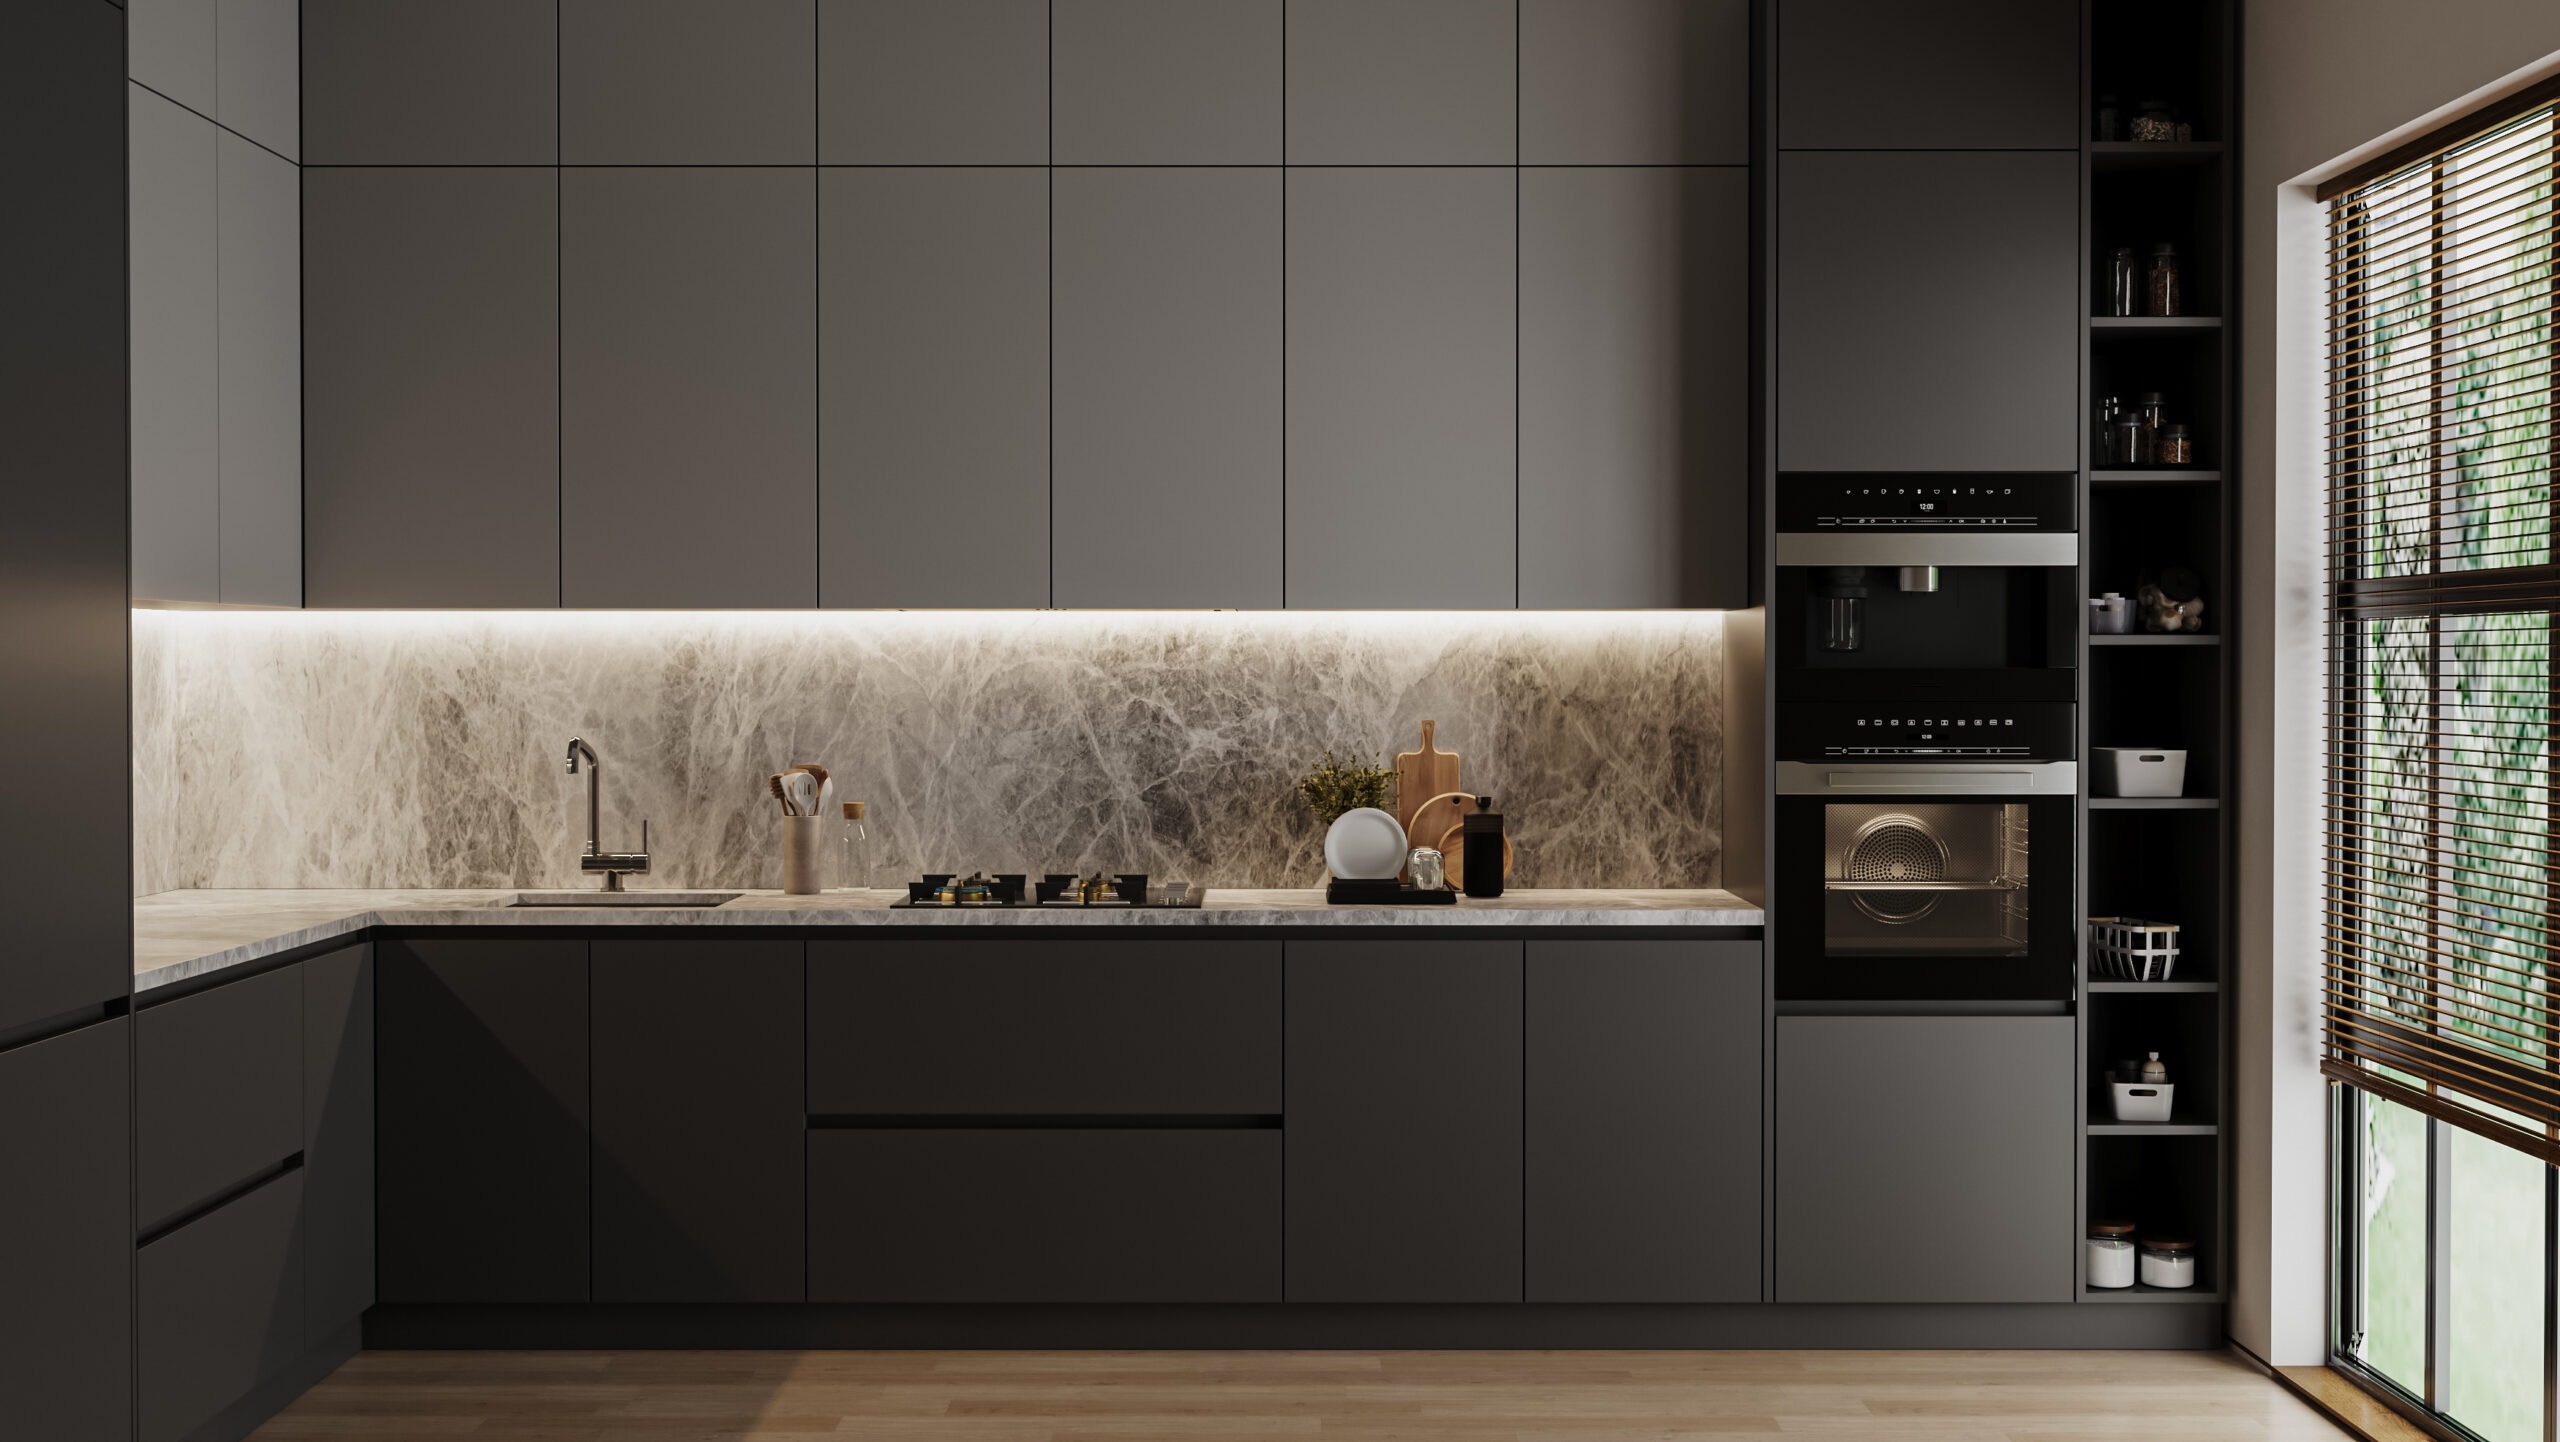 Modern Dark Grey Kitchen Interior 3d Rendering 2022 04 21 13 51 35 Utc Scaled 